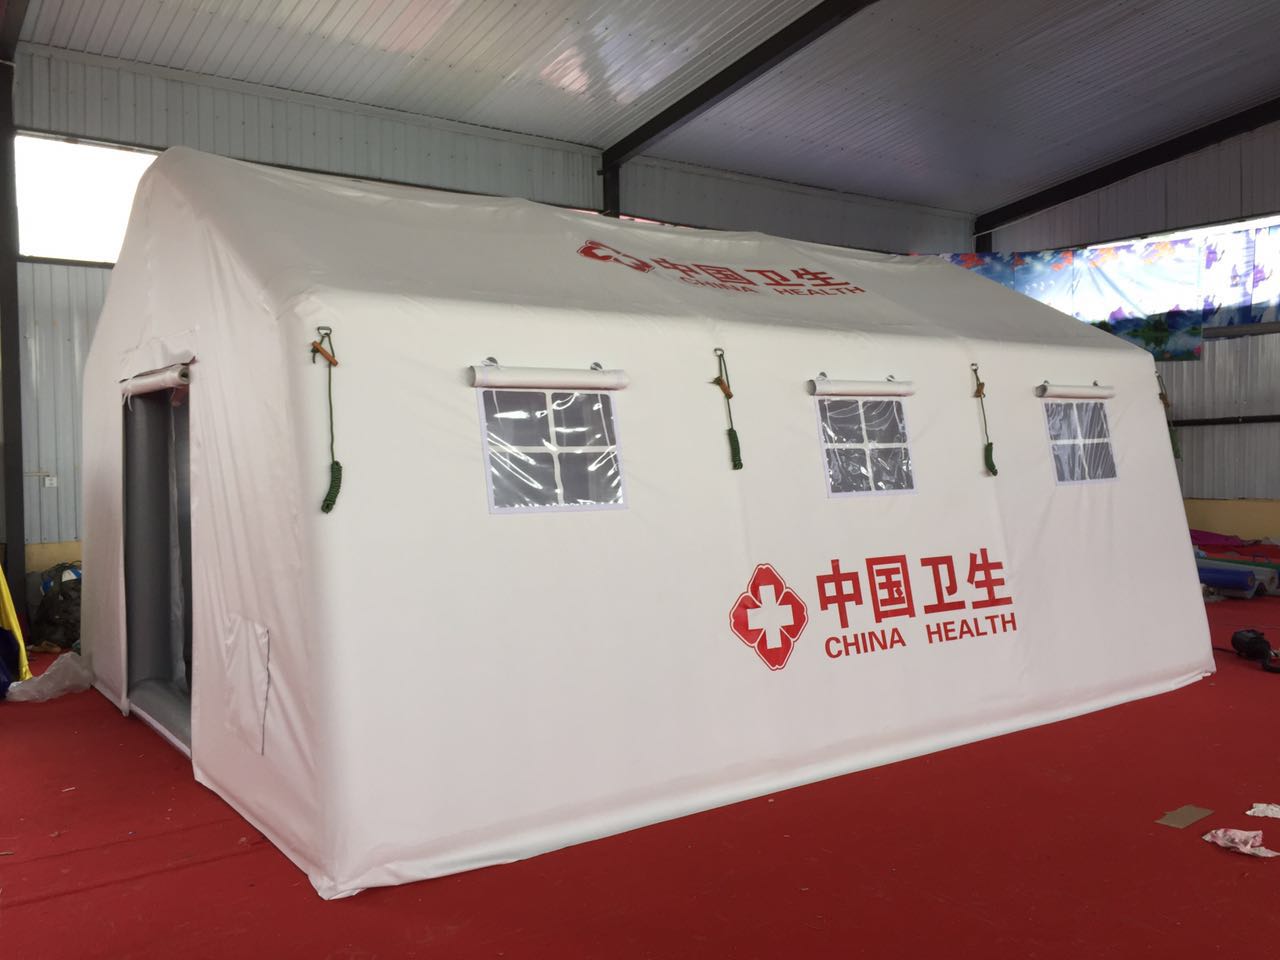 中国卫生应急医疗帐篷,疾控防疫储备物资,海关检疫临时